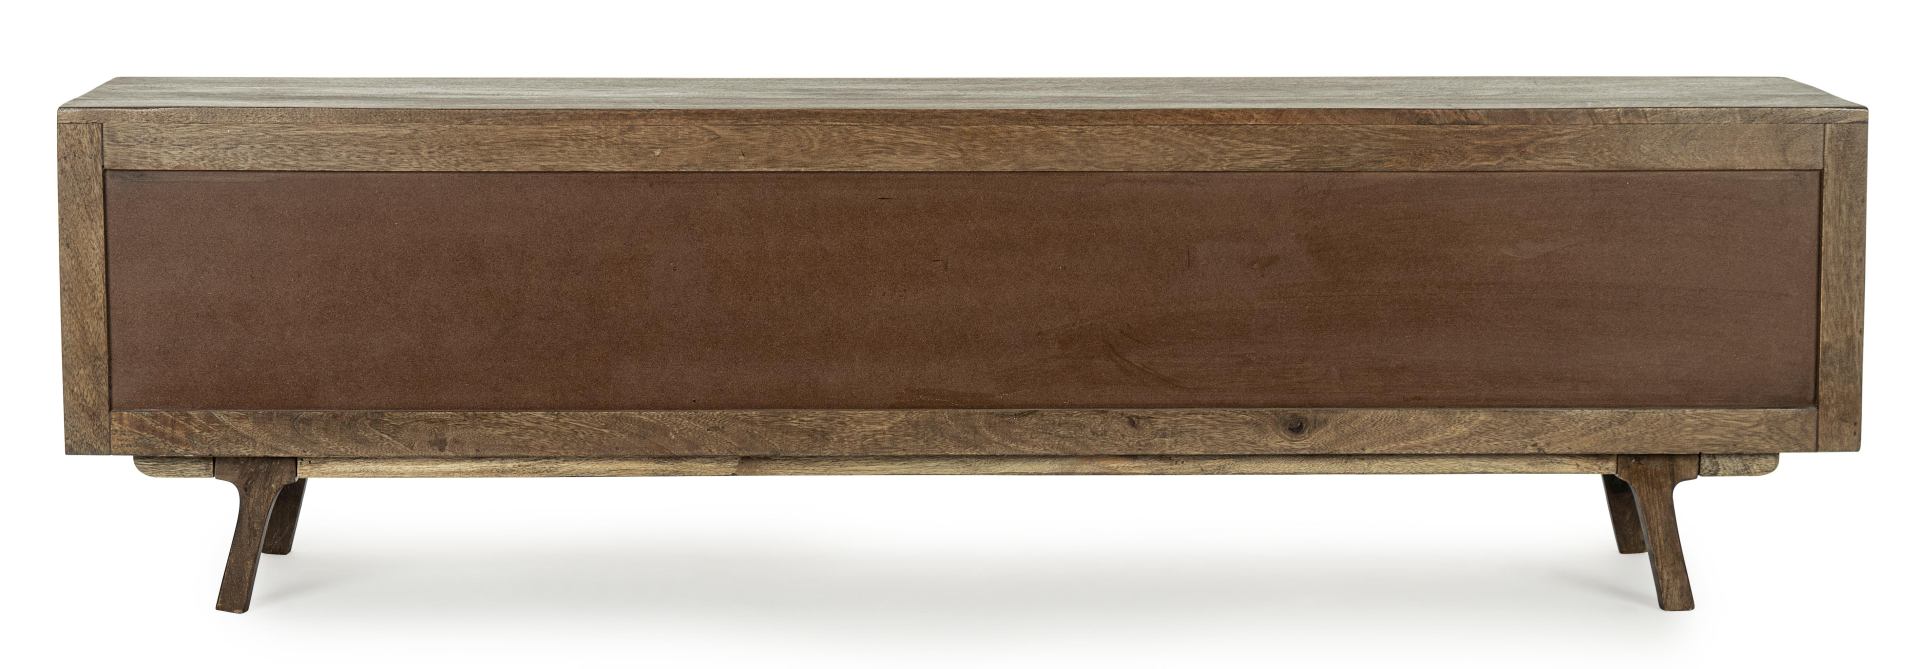 Das TV Board Sherman überzeugt mit seinem klassischen Design. Gefertigt wurde es aus Mangoholz, welches einen natürlichen Farbton besitzt. Das Gestell ist auch aus Mangoholz. Das TV Board verfügt über zwei Schiebetüren und drei Schubladen. Die Breite betr